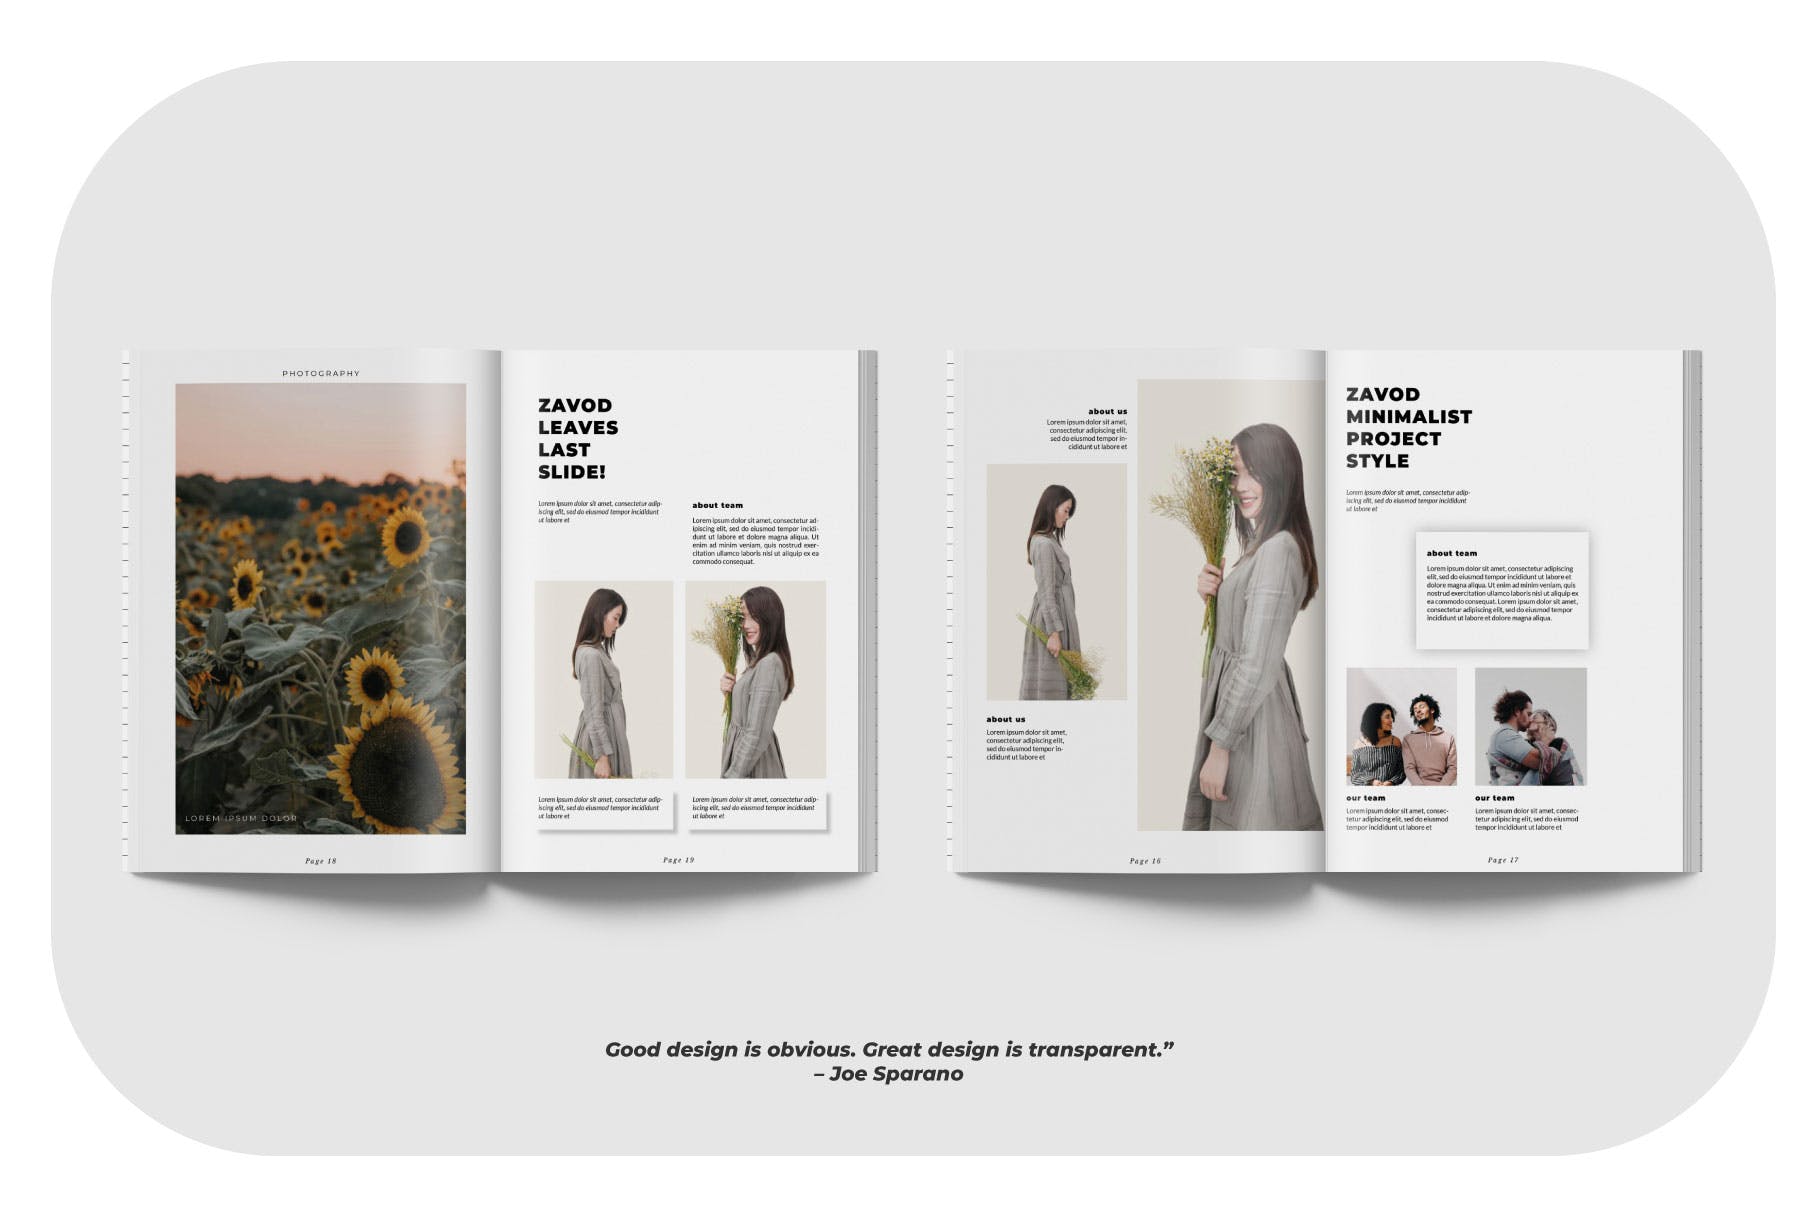 摄影/模特主题16图库精选杂志排版设计模板 ZAVOD Business Magazine Minimal Template – LS插图(3)